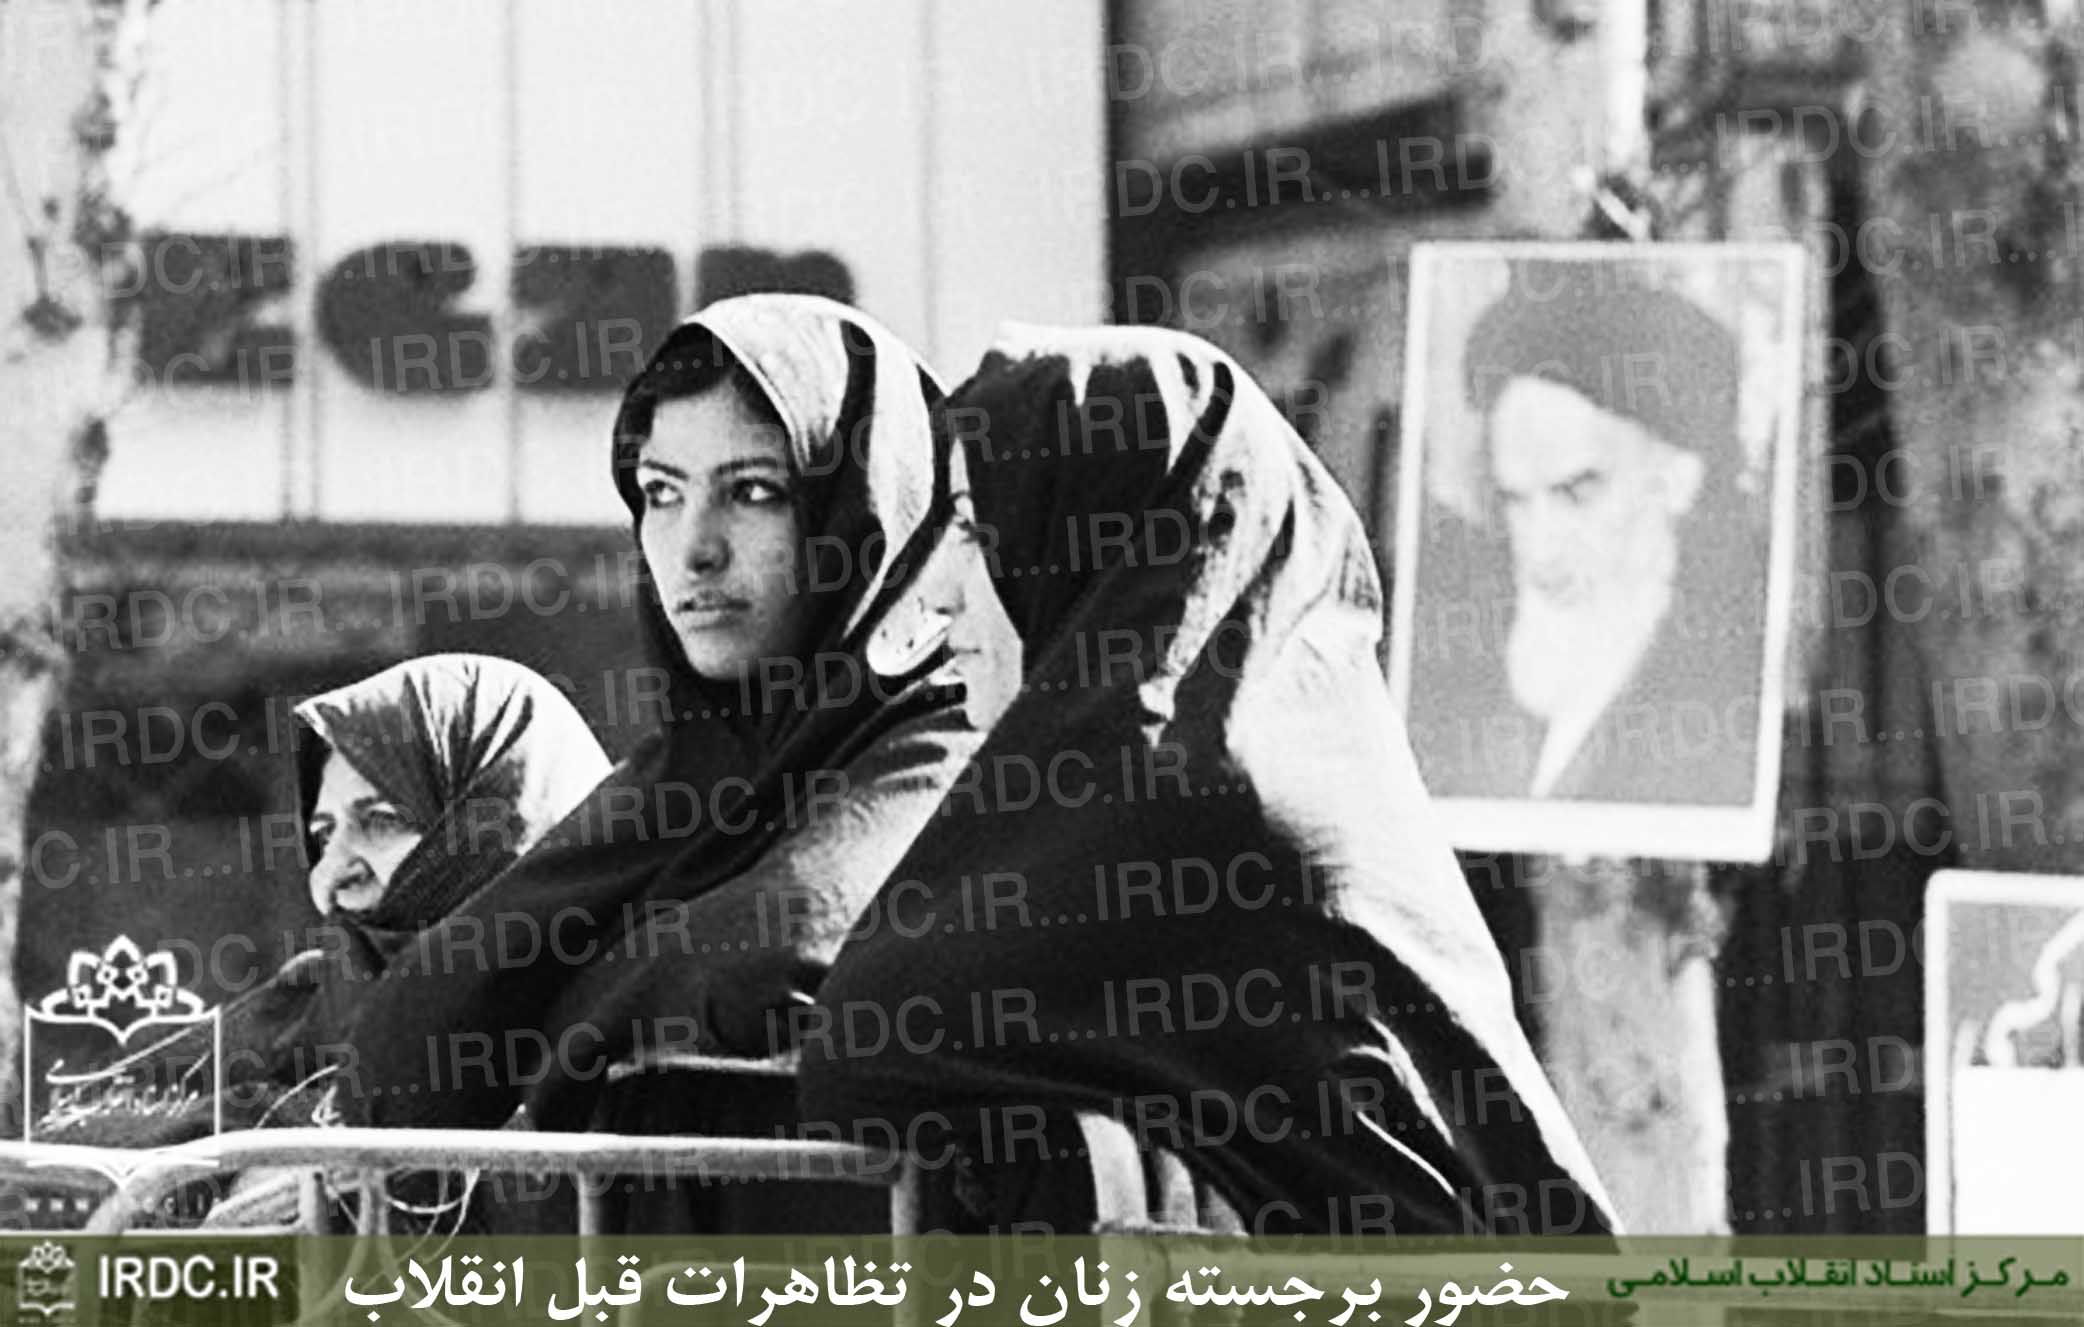 تصاویر حضور زنان در تظاهرات قبل از انقلاب